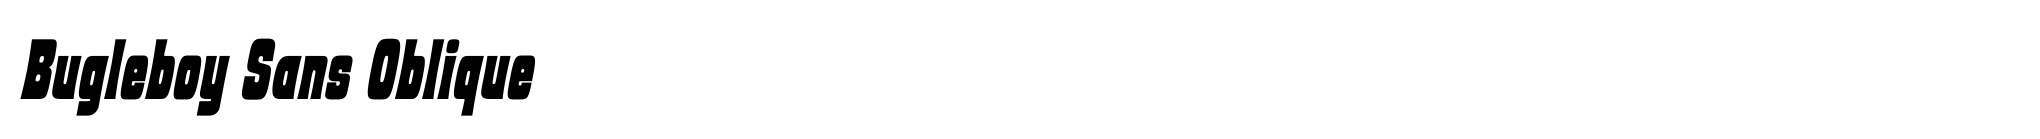 Bugleboy Sans Oblique image